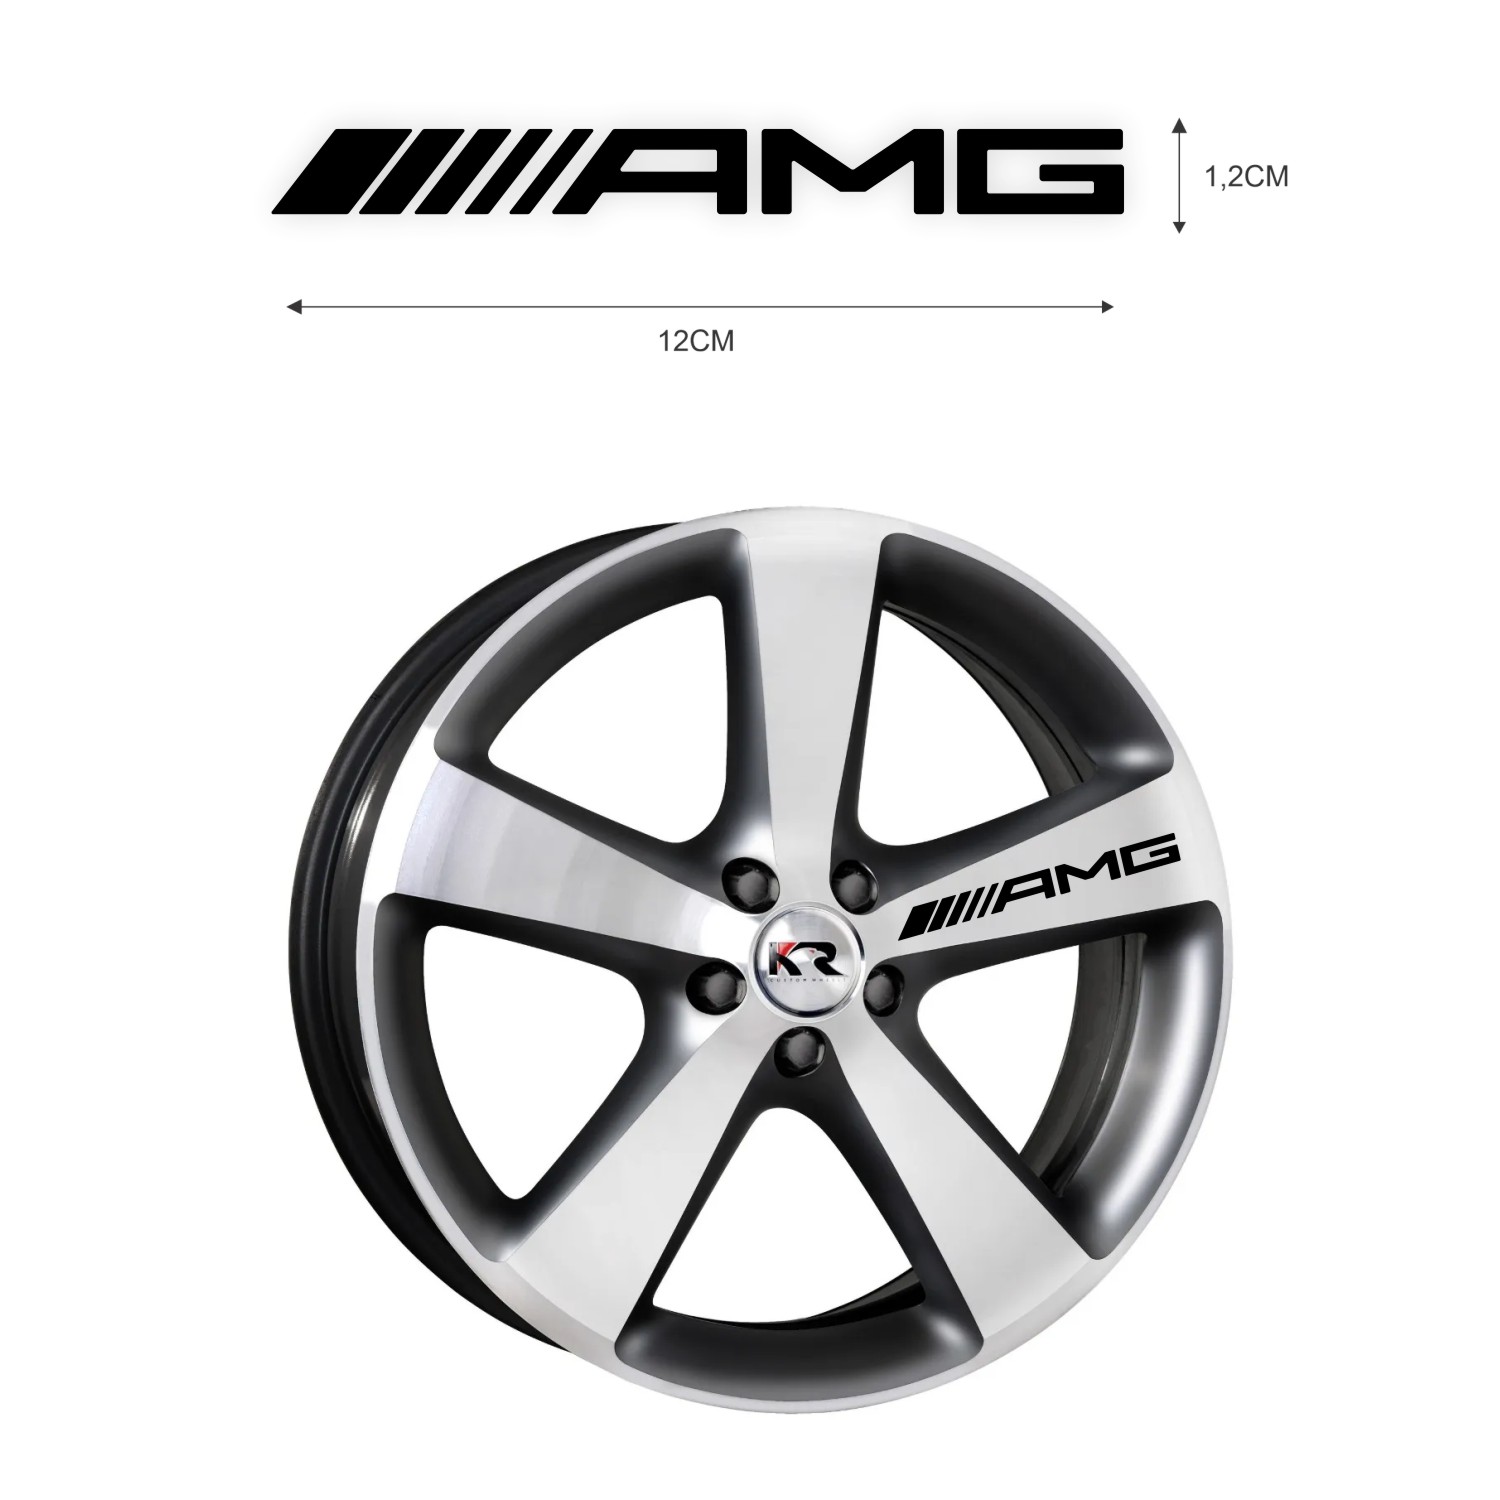 Adesivo Para Rodas  AMG Mercedes - 5 unid.  Várias cores